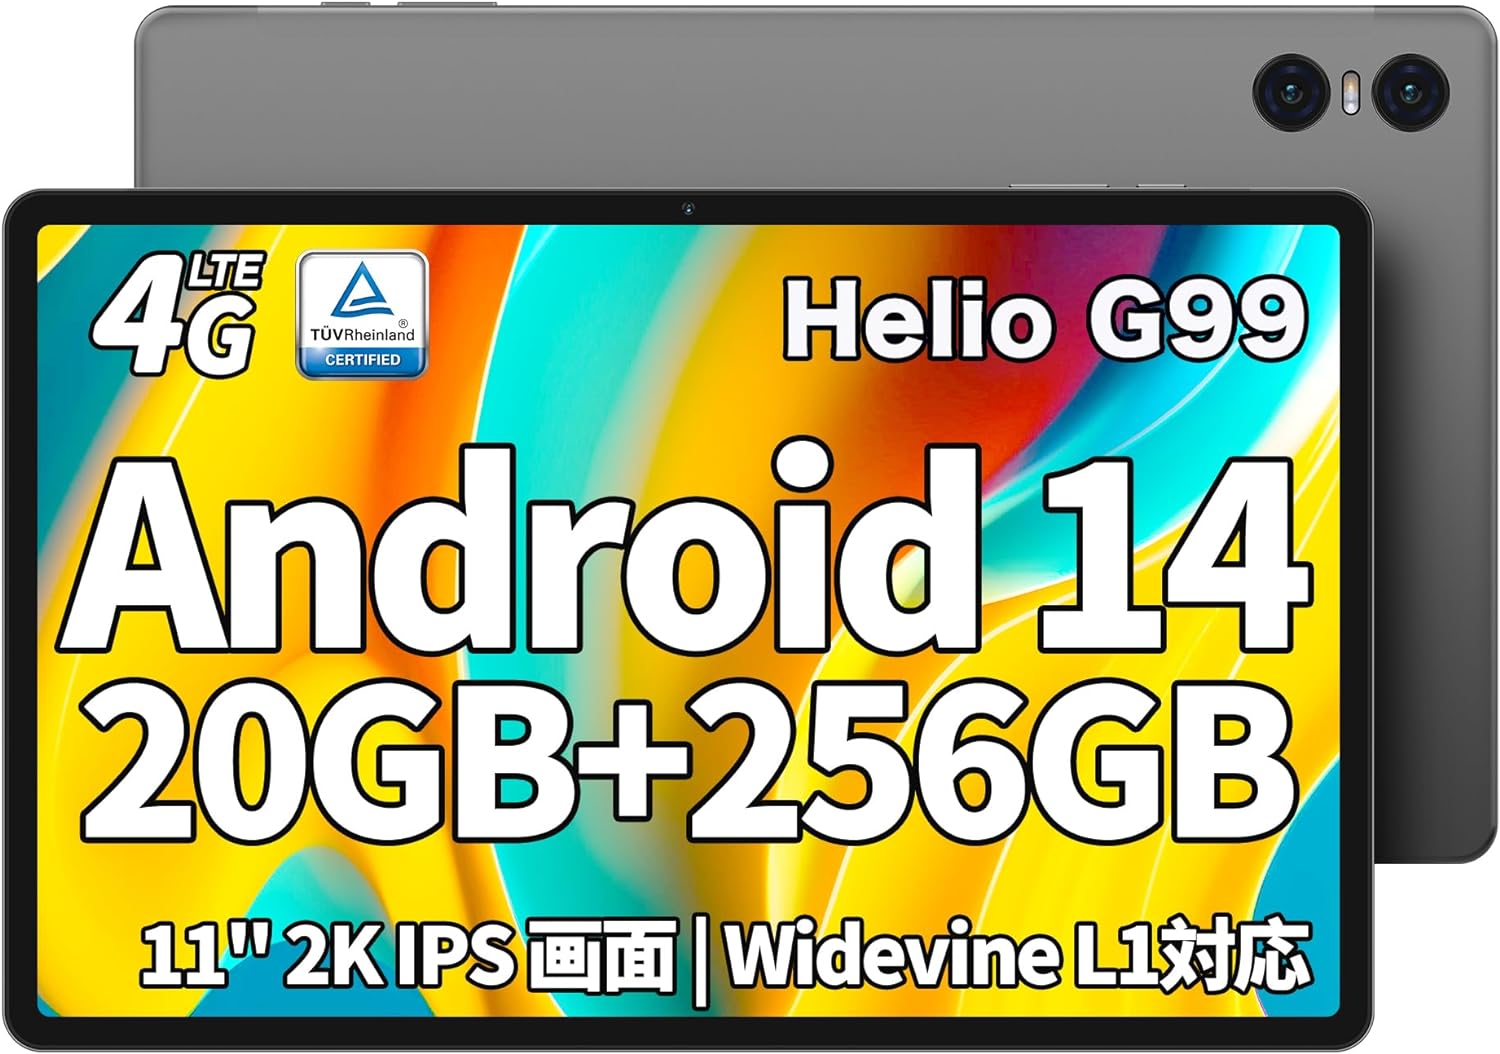 Android 14 タブレット 11インチ TECLAST T50Pro タブレット Helio G99 8コアCPU 2.2Ghz 20GB+256GB+1TB拡張 2000*1200 2K IPS画面 Widevine L1対応 タブレット SIMフリー4G LTE 8000mAh+18W急速充電+六軸 ジャイロスコープ+BT5.2+5G WiFi+TUVブルーライト認証